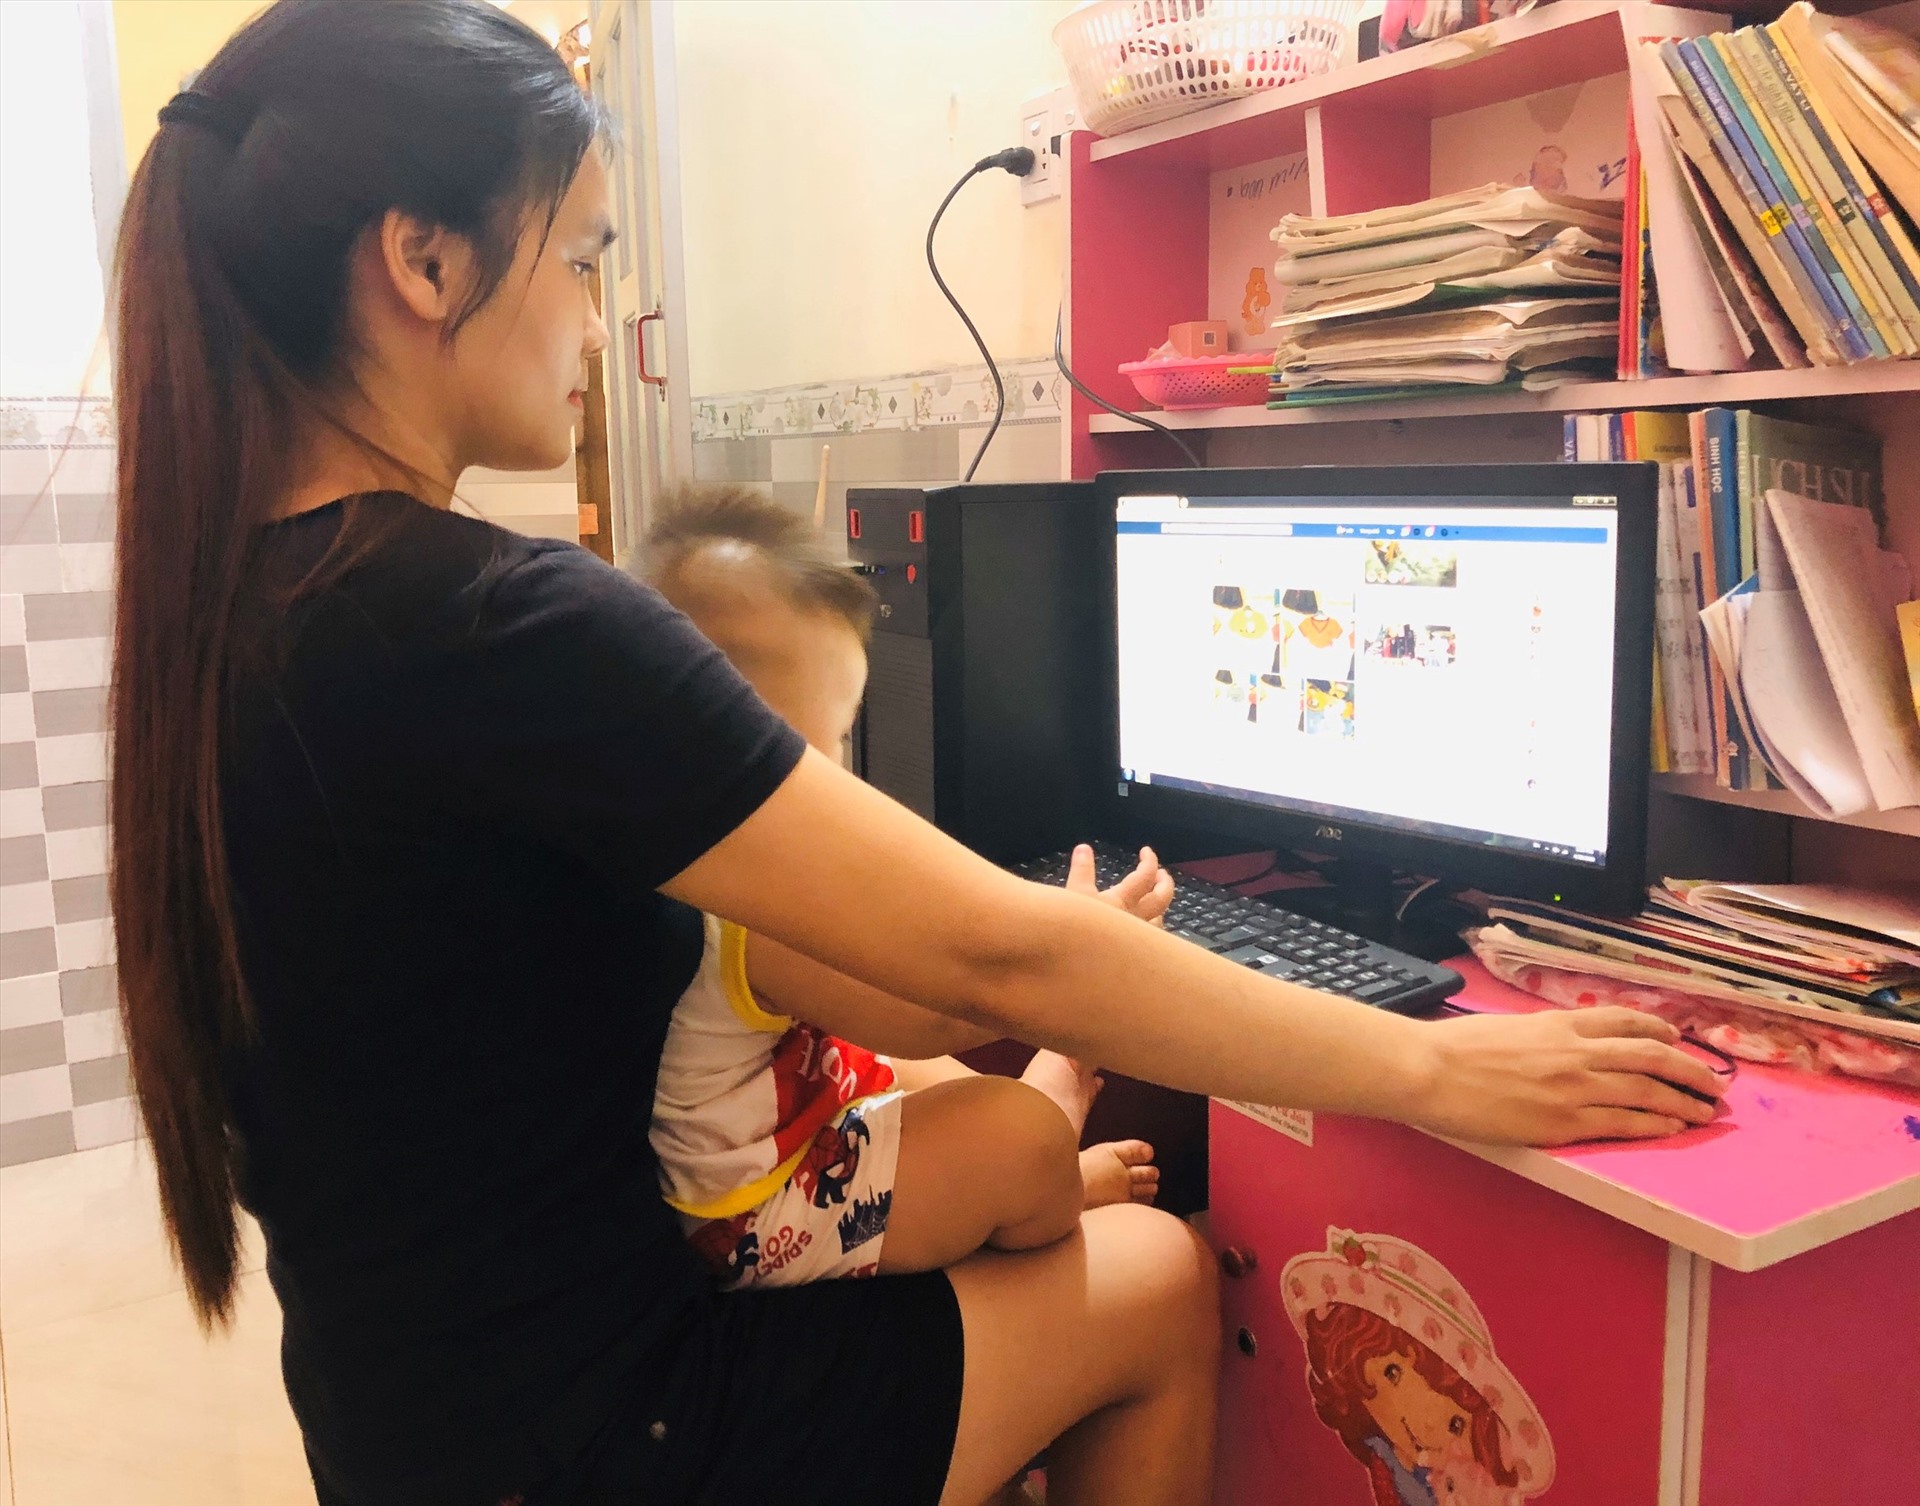 Một giáo viên mầm non ở Đắk Lắk vừa bế con vừa tranh thủ bán hàng online để kiếm thêm thu nhập trong mùa dịch COVID-19. Ảnh: Tú Sương